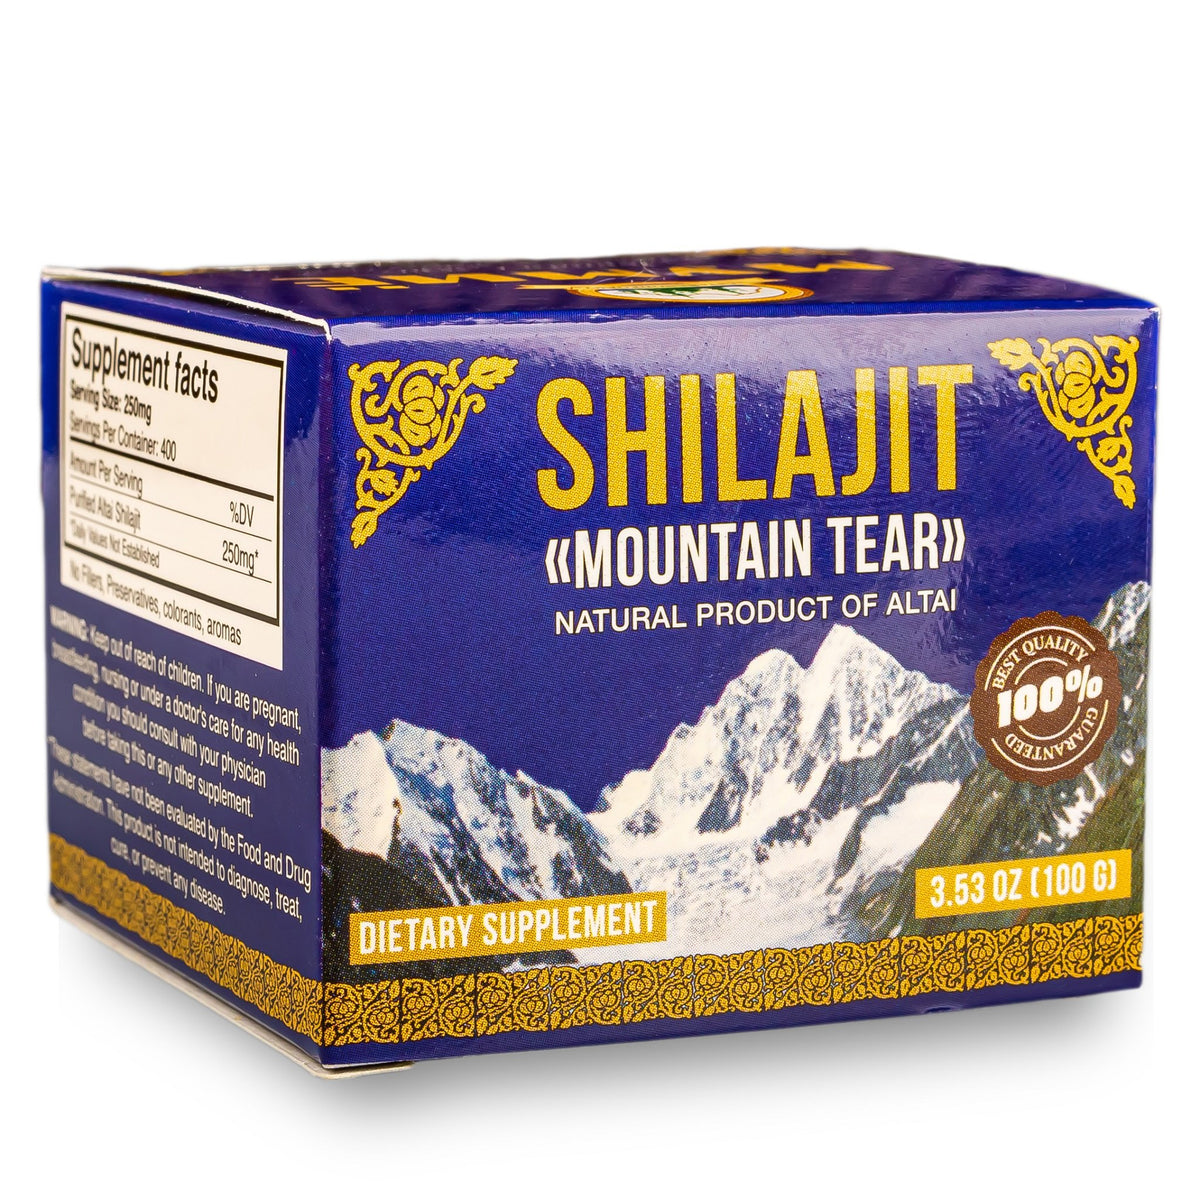 Shilajit Cream Resin Balm from Altai Mountains Siberia 100g (3.4 oz)